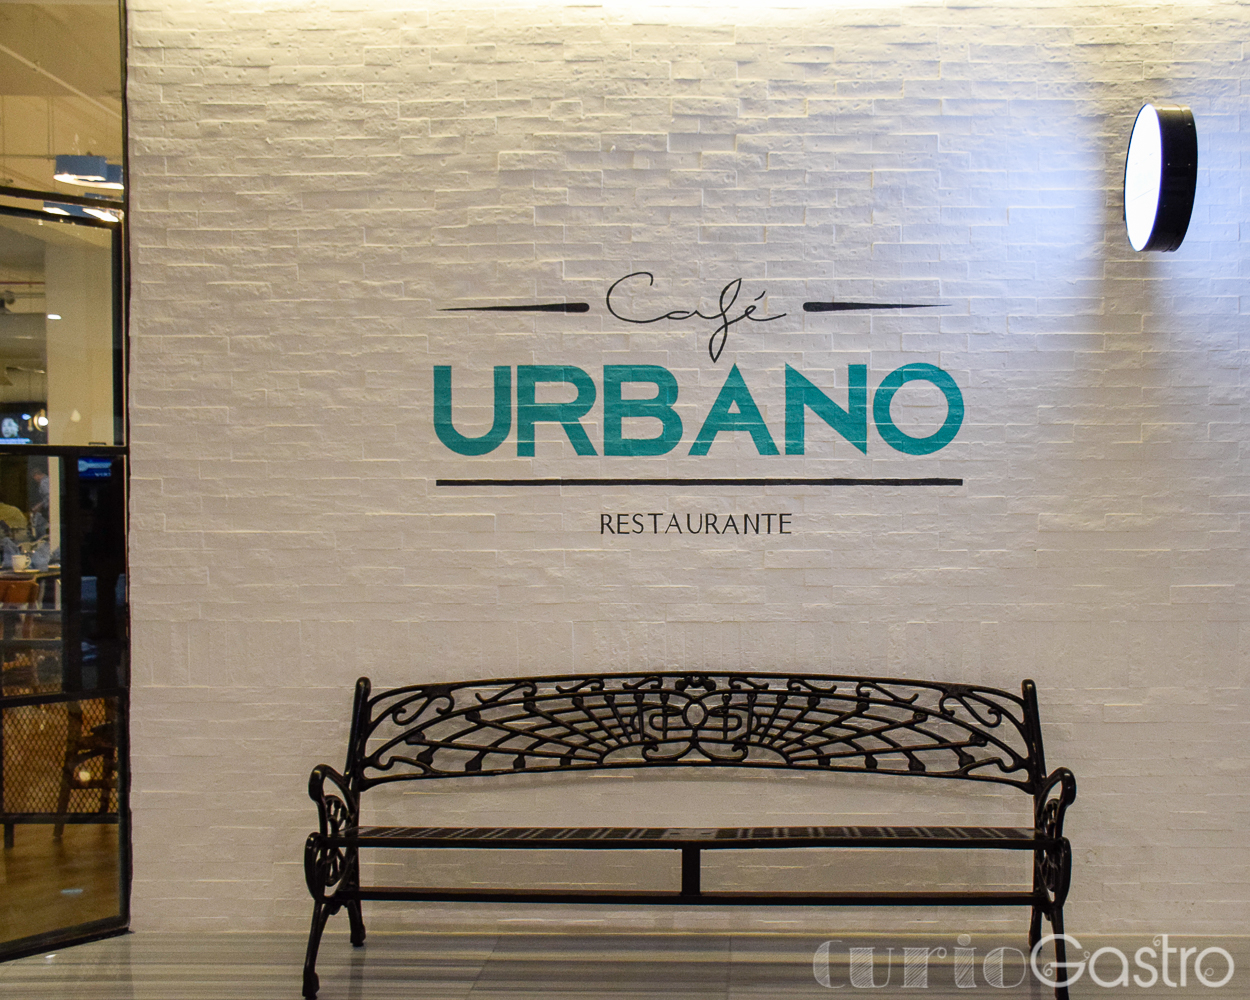 Café Urbano: moderno y delicioso